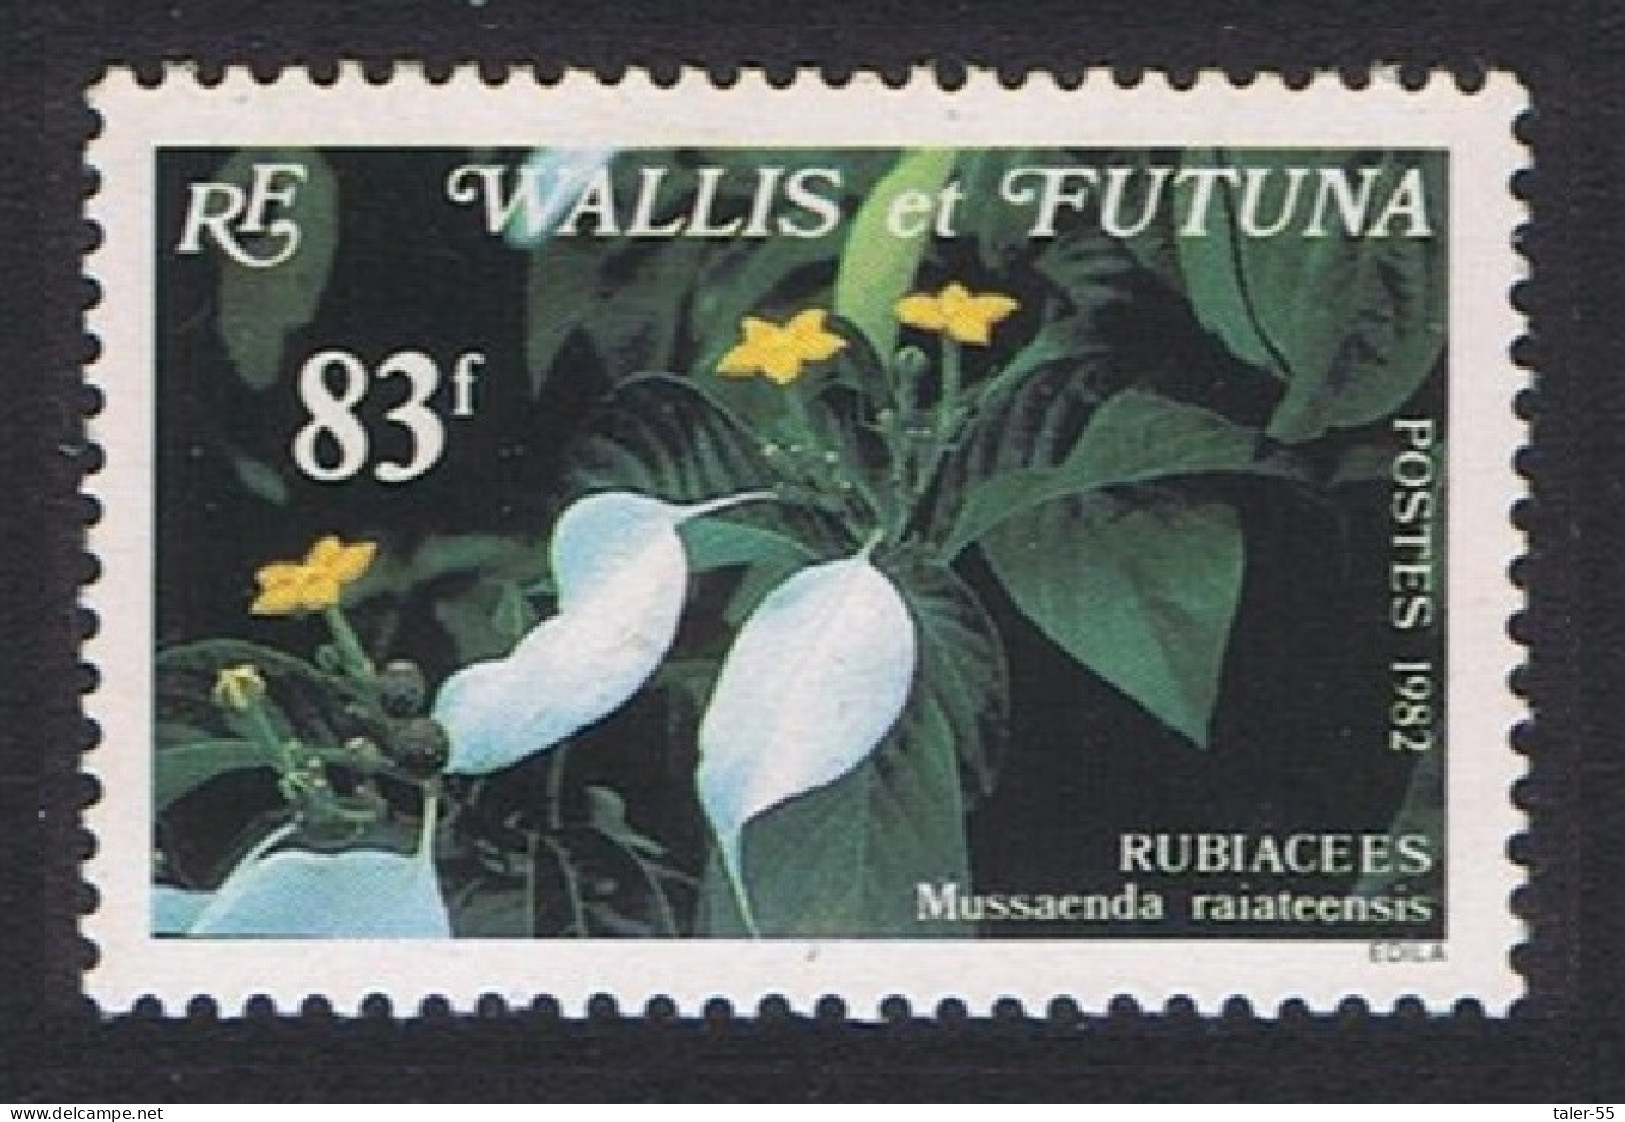 Wallis And Futuna Orchids Mussaenda Raiateensis 83f 1982 MNH SG#399 Sc#286 - Ongebruikt